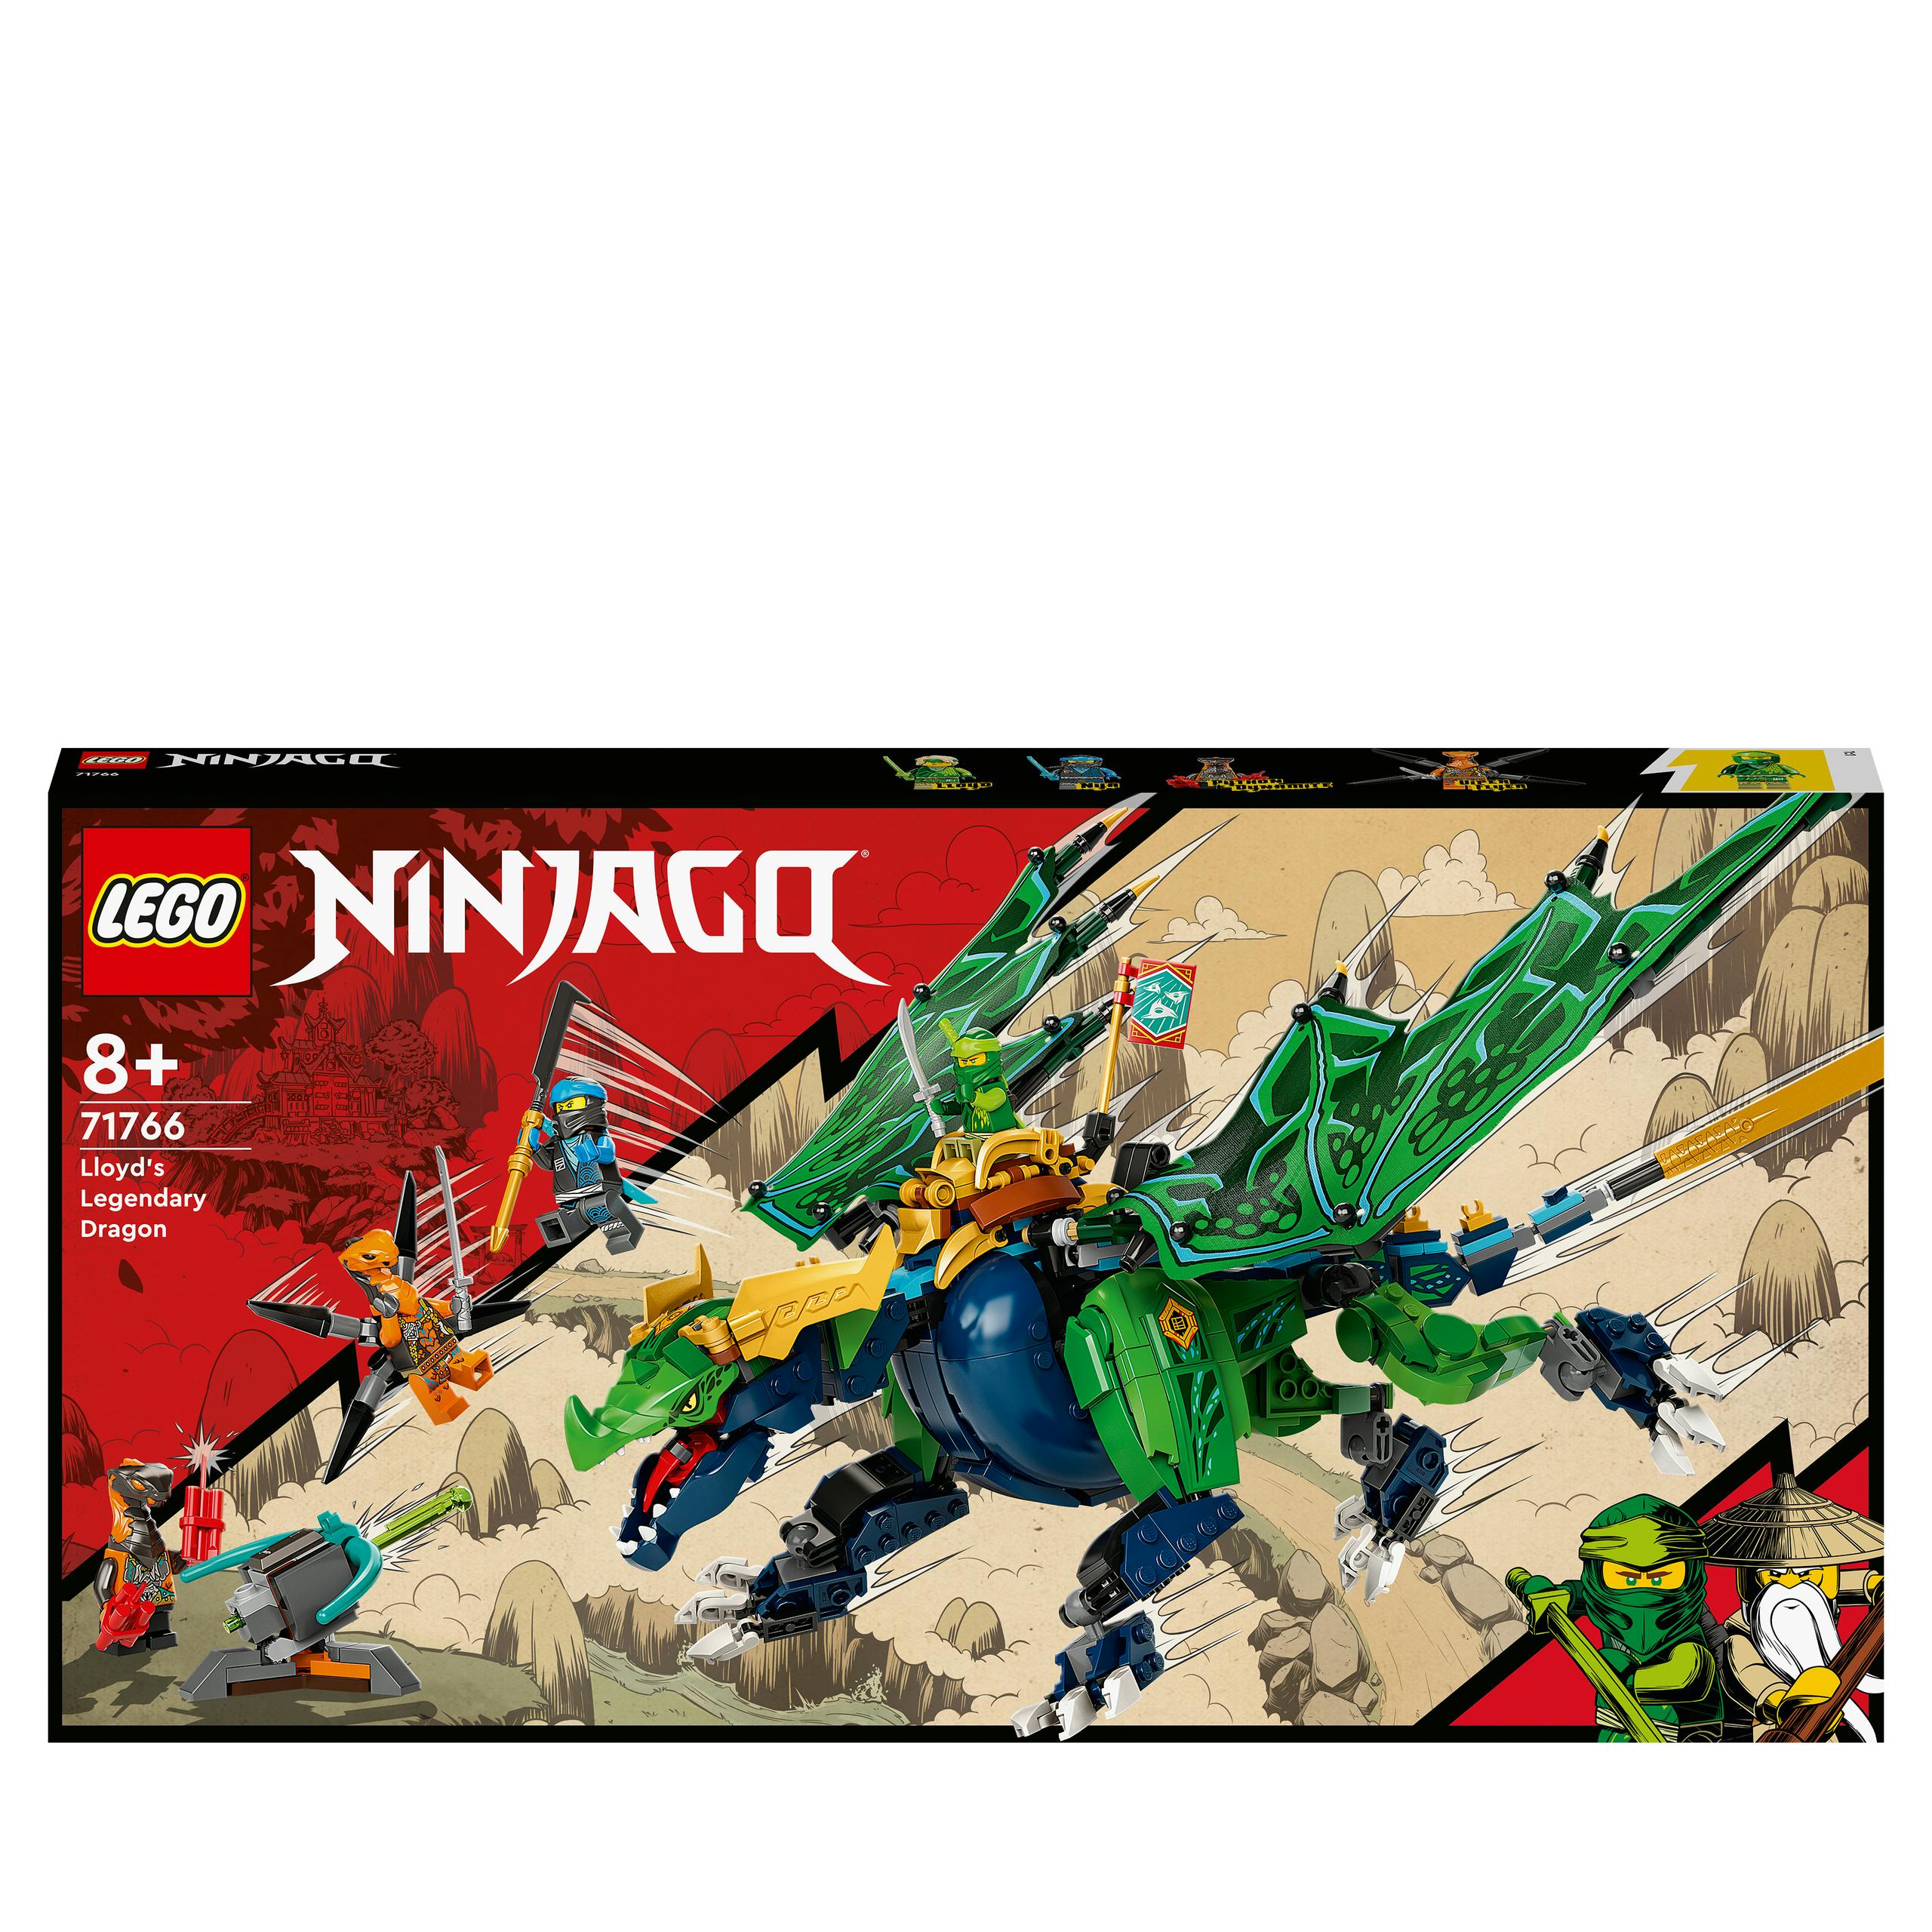 Opmerkelijk Misverstand zweer LEGO NINJAGO Lloyd Legendarische Draak (71766)